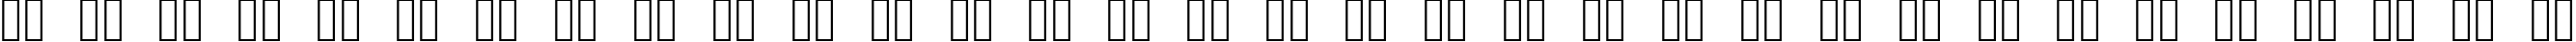 Пример написания русского алфавита шрифтом OpenSymbol